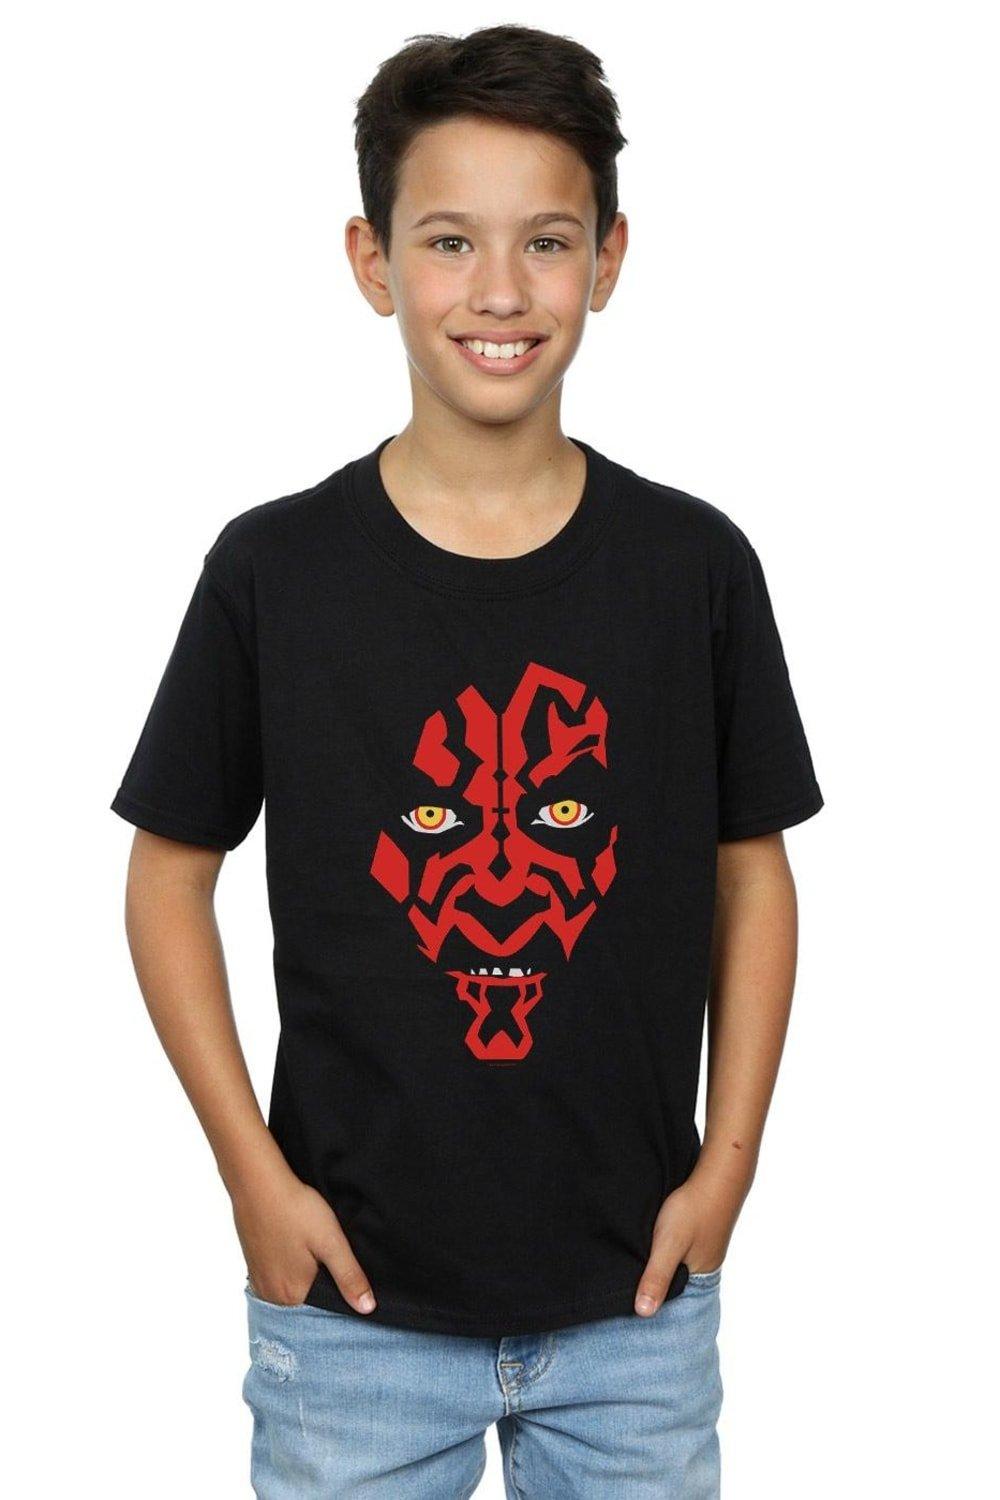 Футболка с лицом Дарта Мола Star Wars, черный мужская футболка с анимацией дарта мола star wars